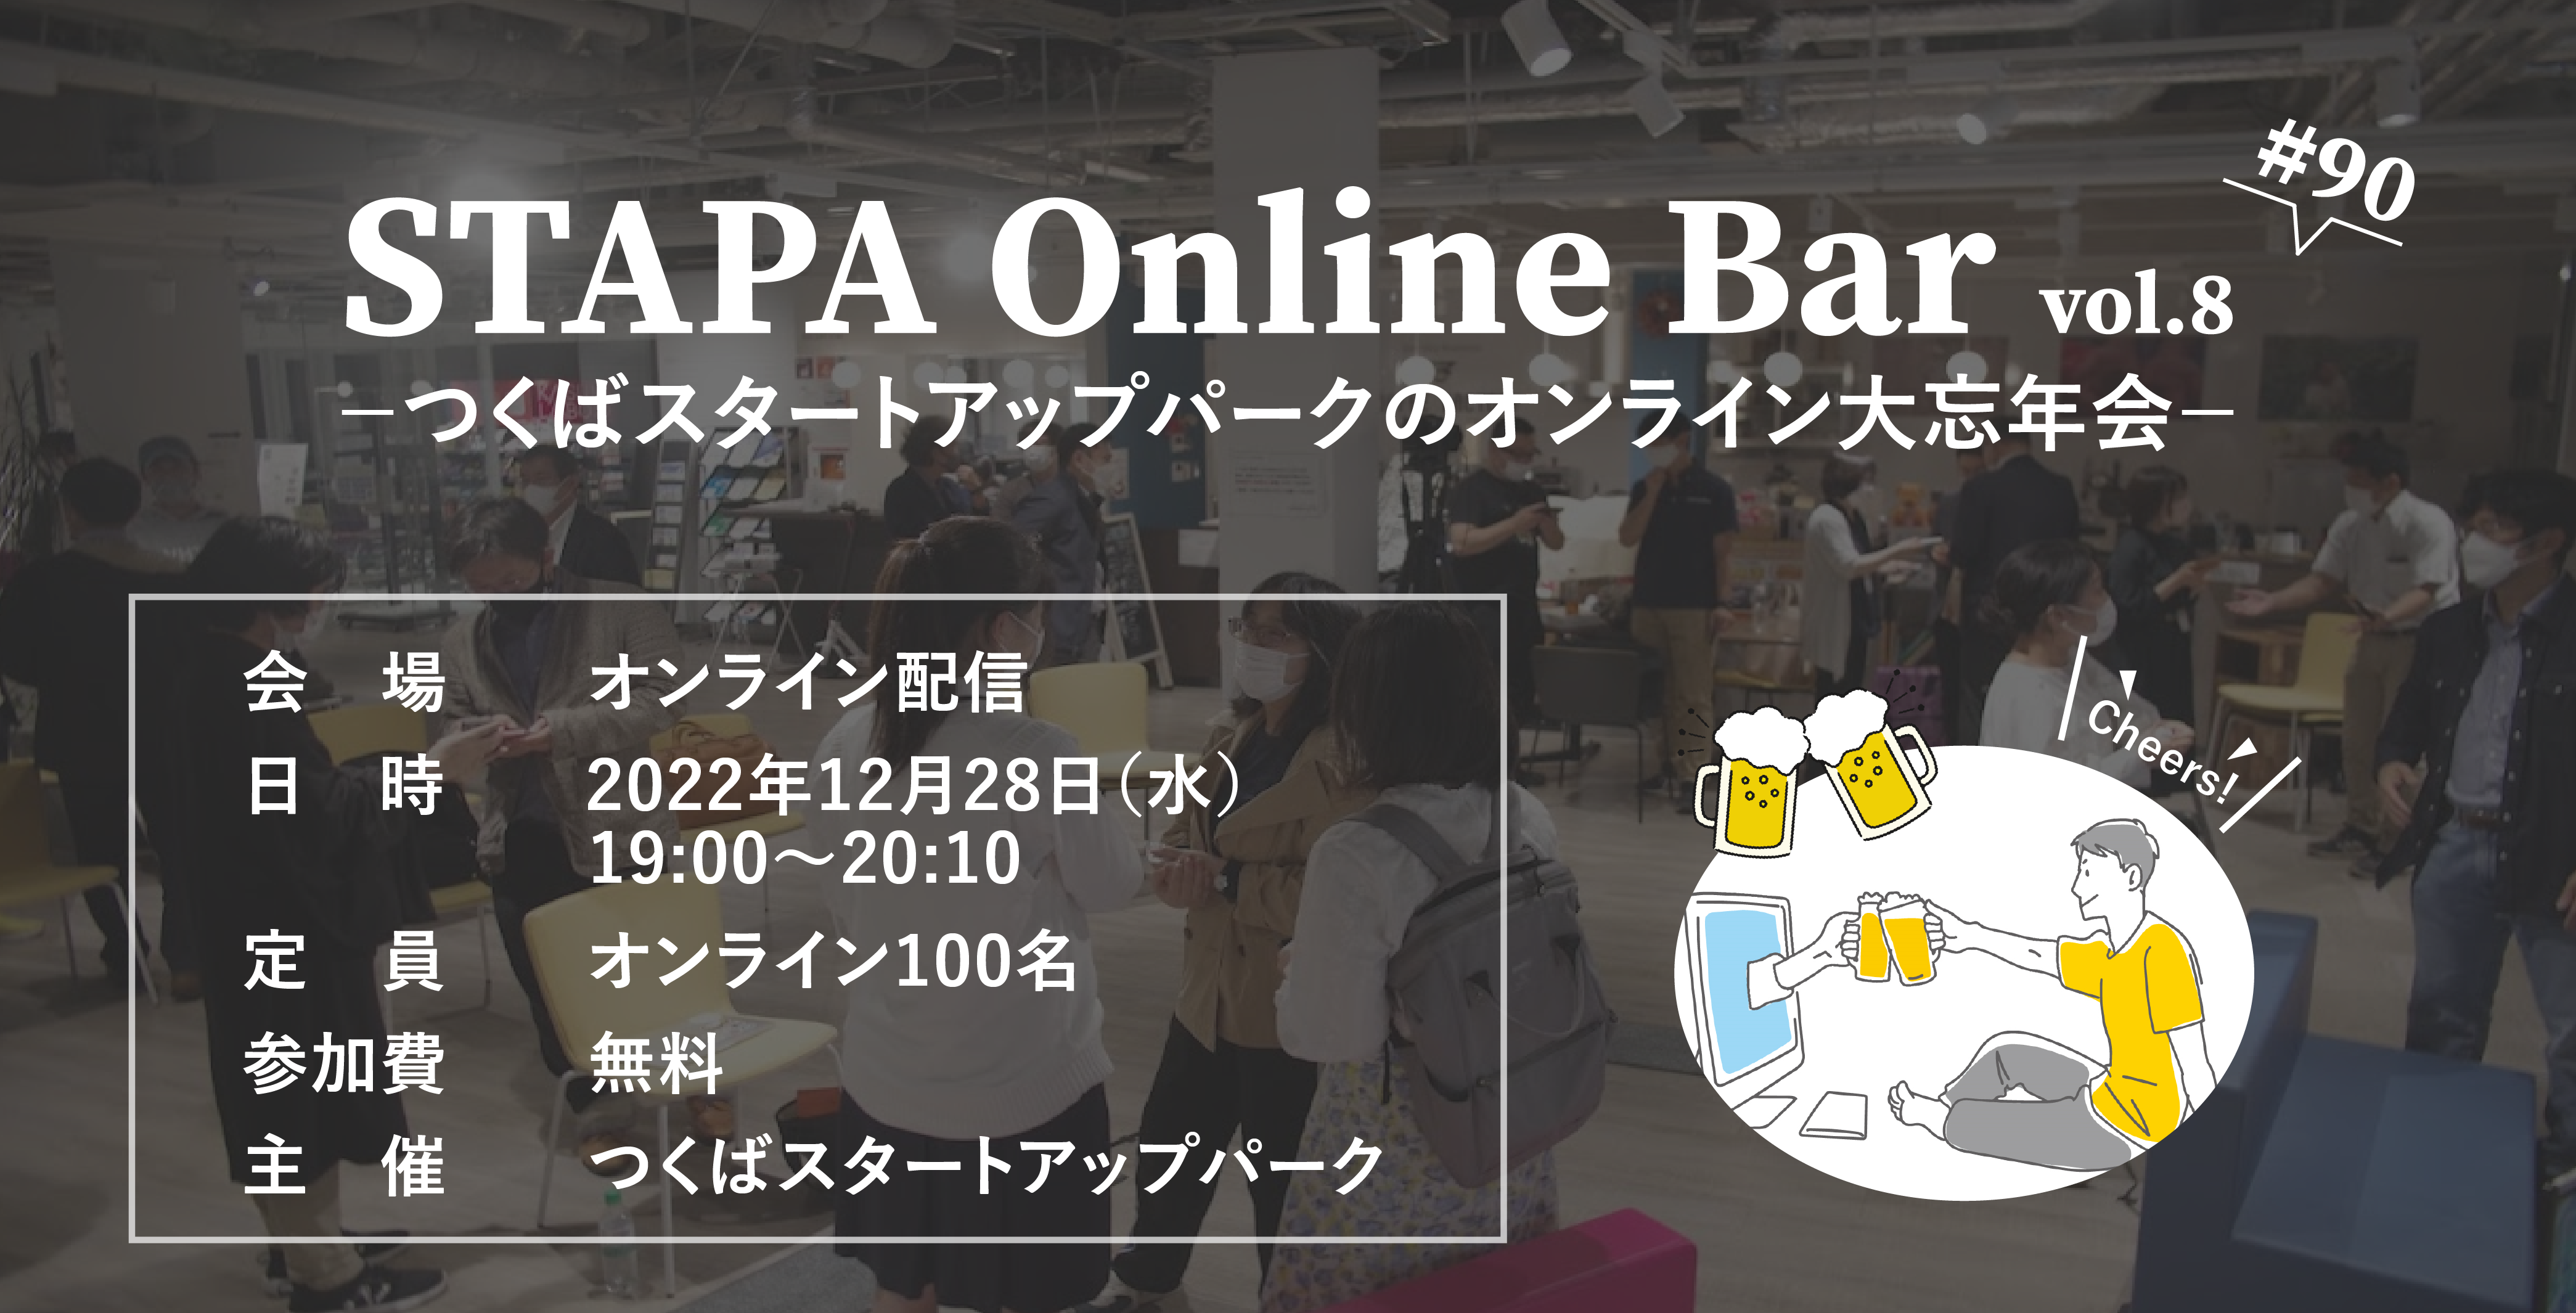 STAPA Online Bar vol.8 －つくばスタートアップパークのオンライン大忘年会－